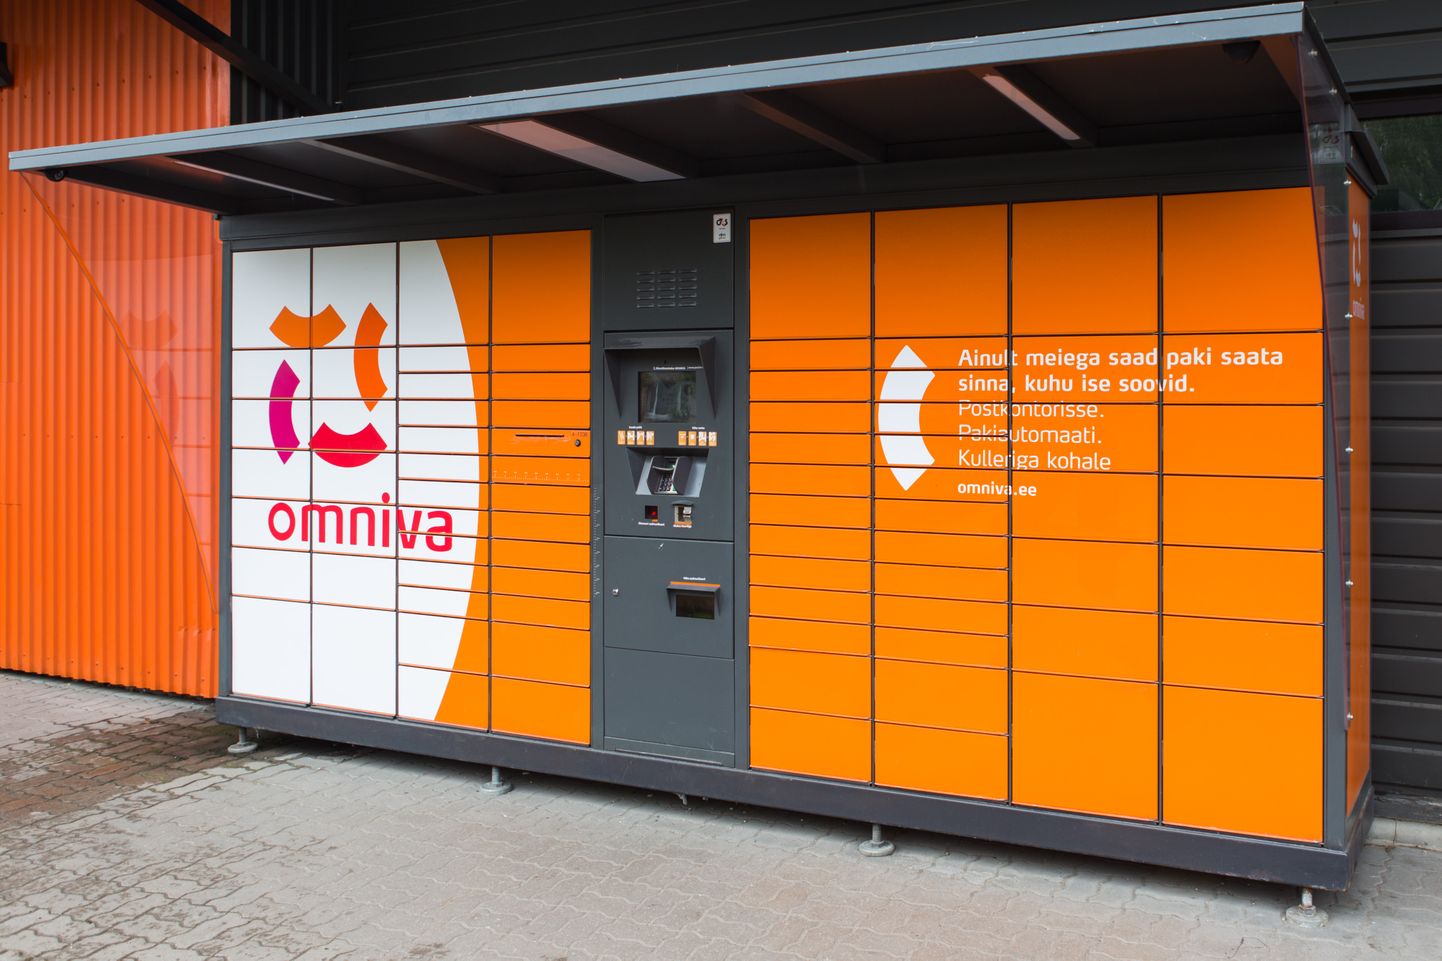 Почтовый автомат Omniva.